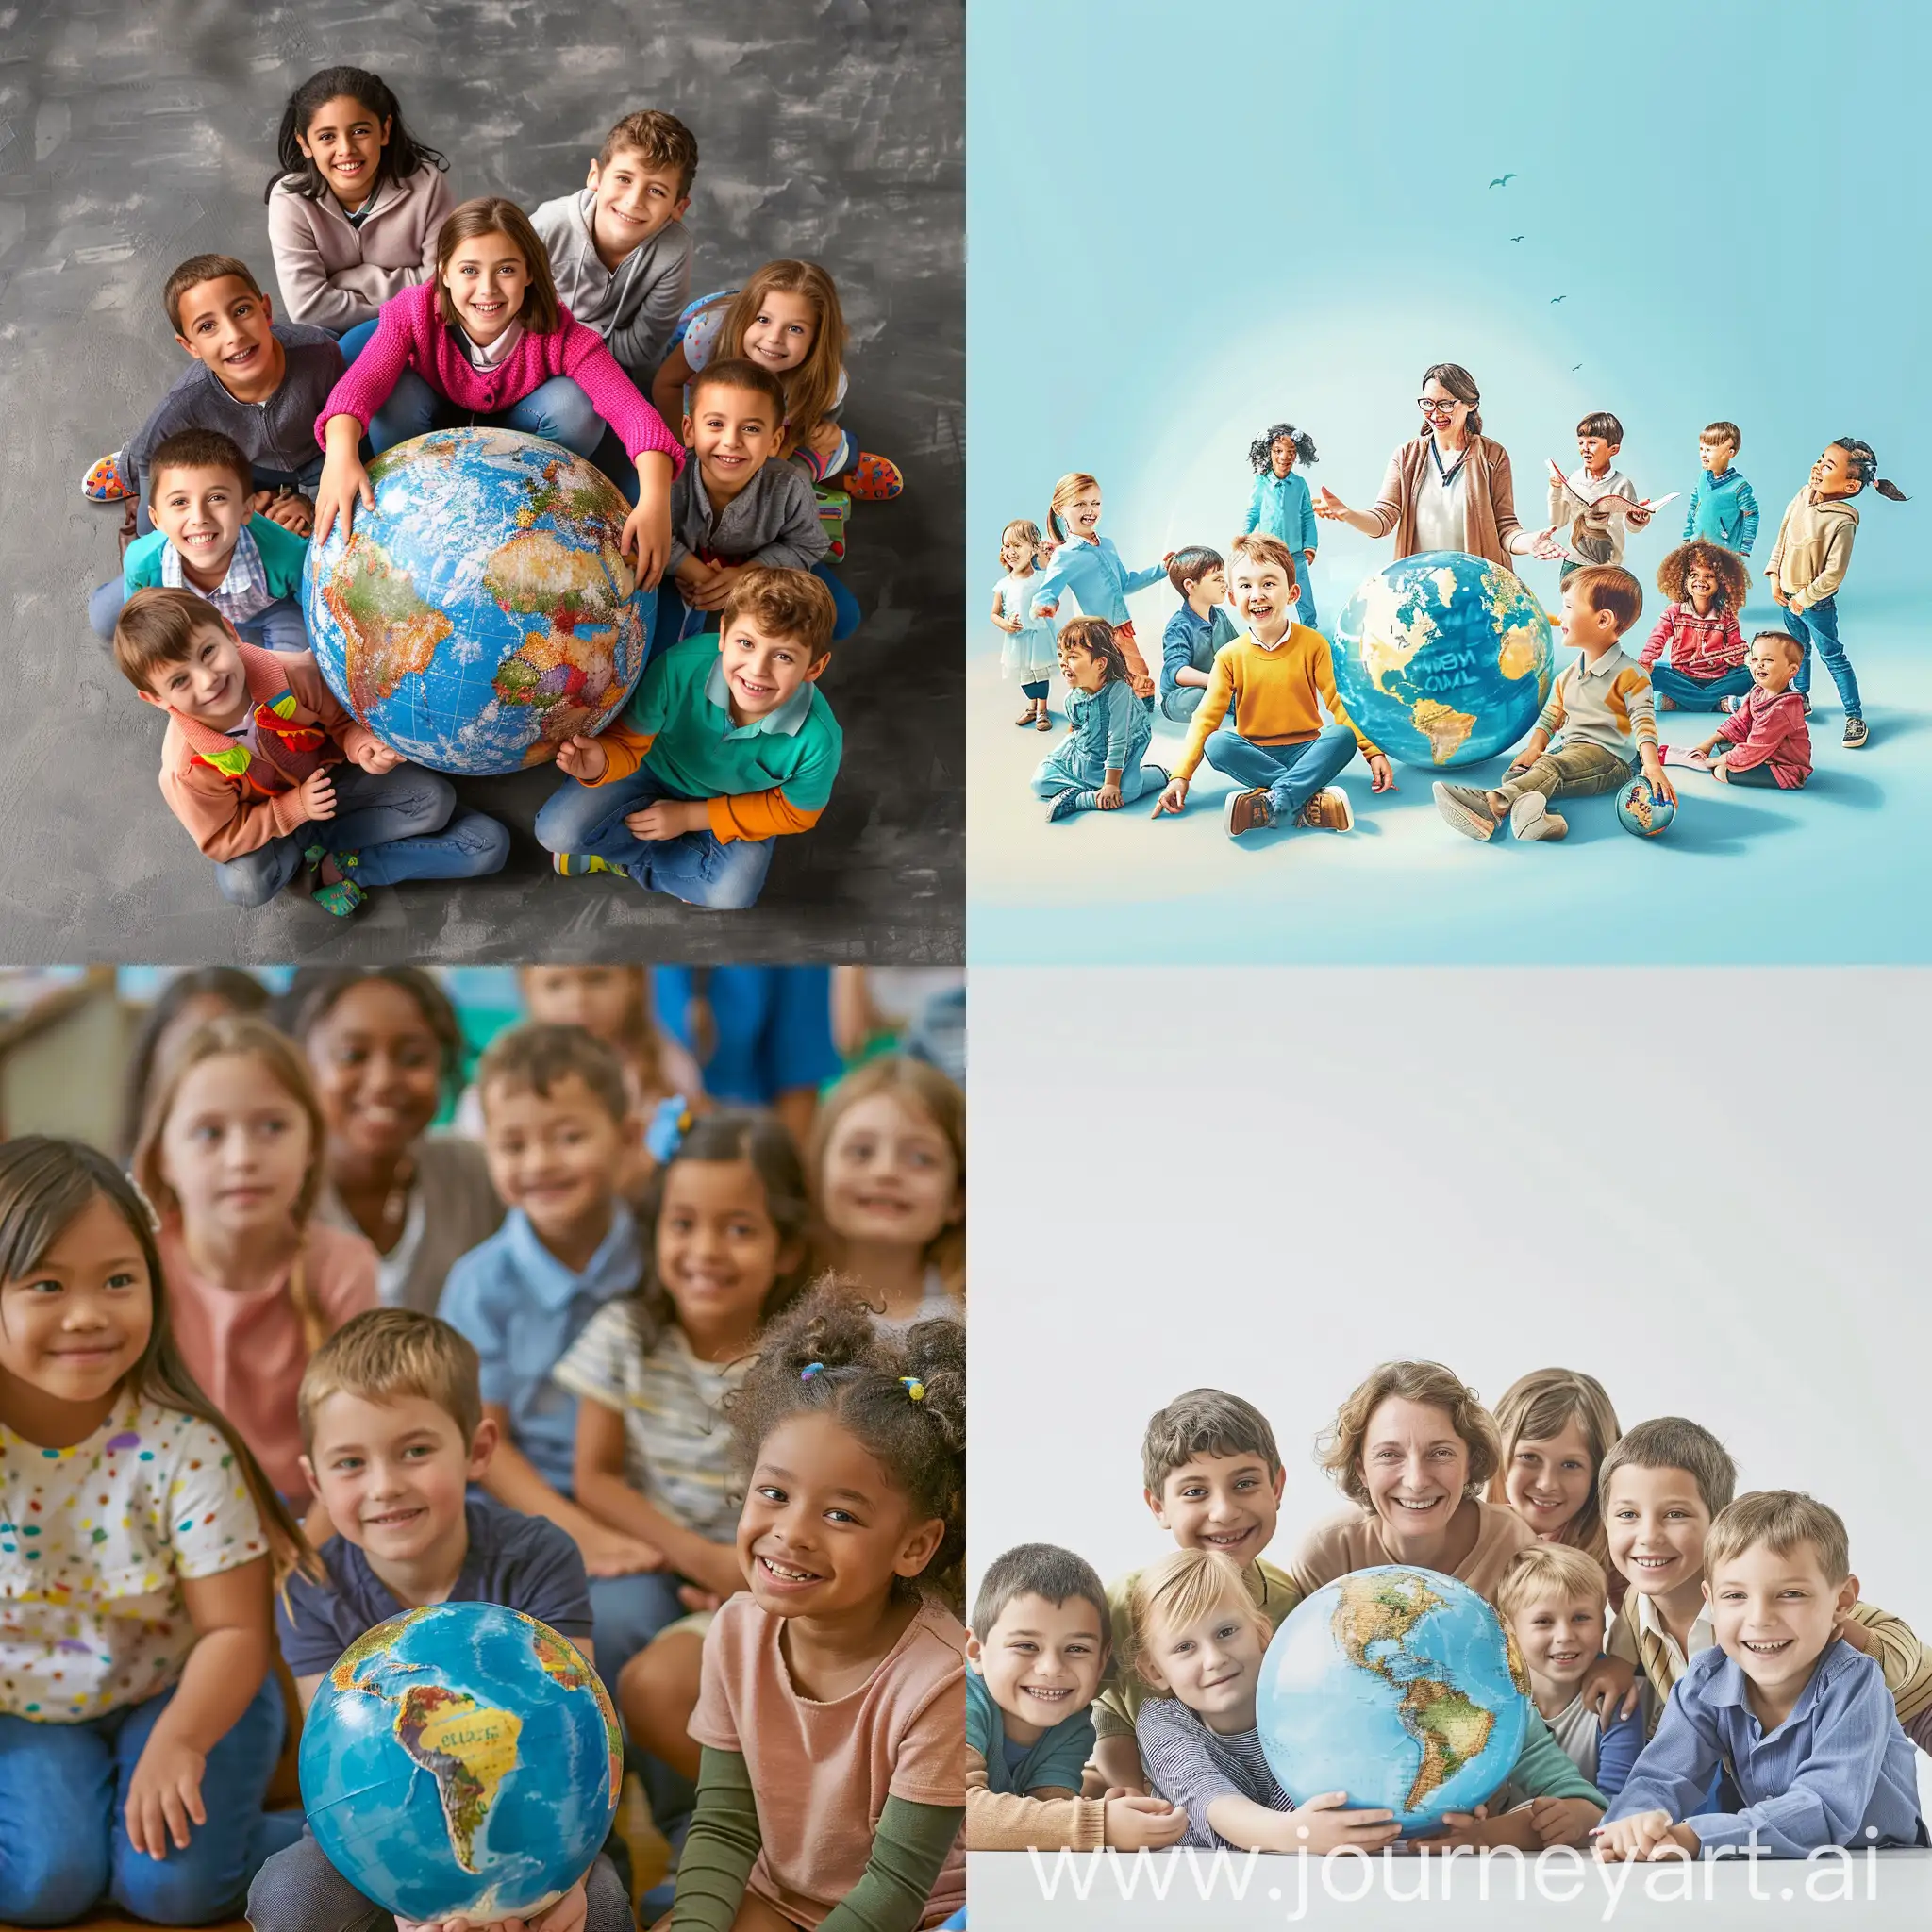 Зображення веселої та динамічної шкільної атмосфери з учителем і дітьми різних вікових груп, які зібралися разом, можливо в колі або навколо глобуса, щоб символізувати глобальність і інклюзивність SEEN.